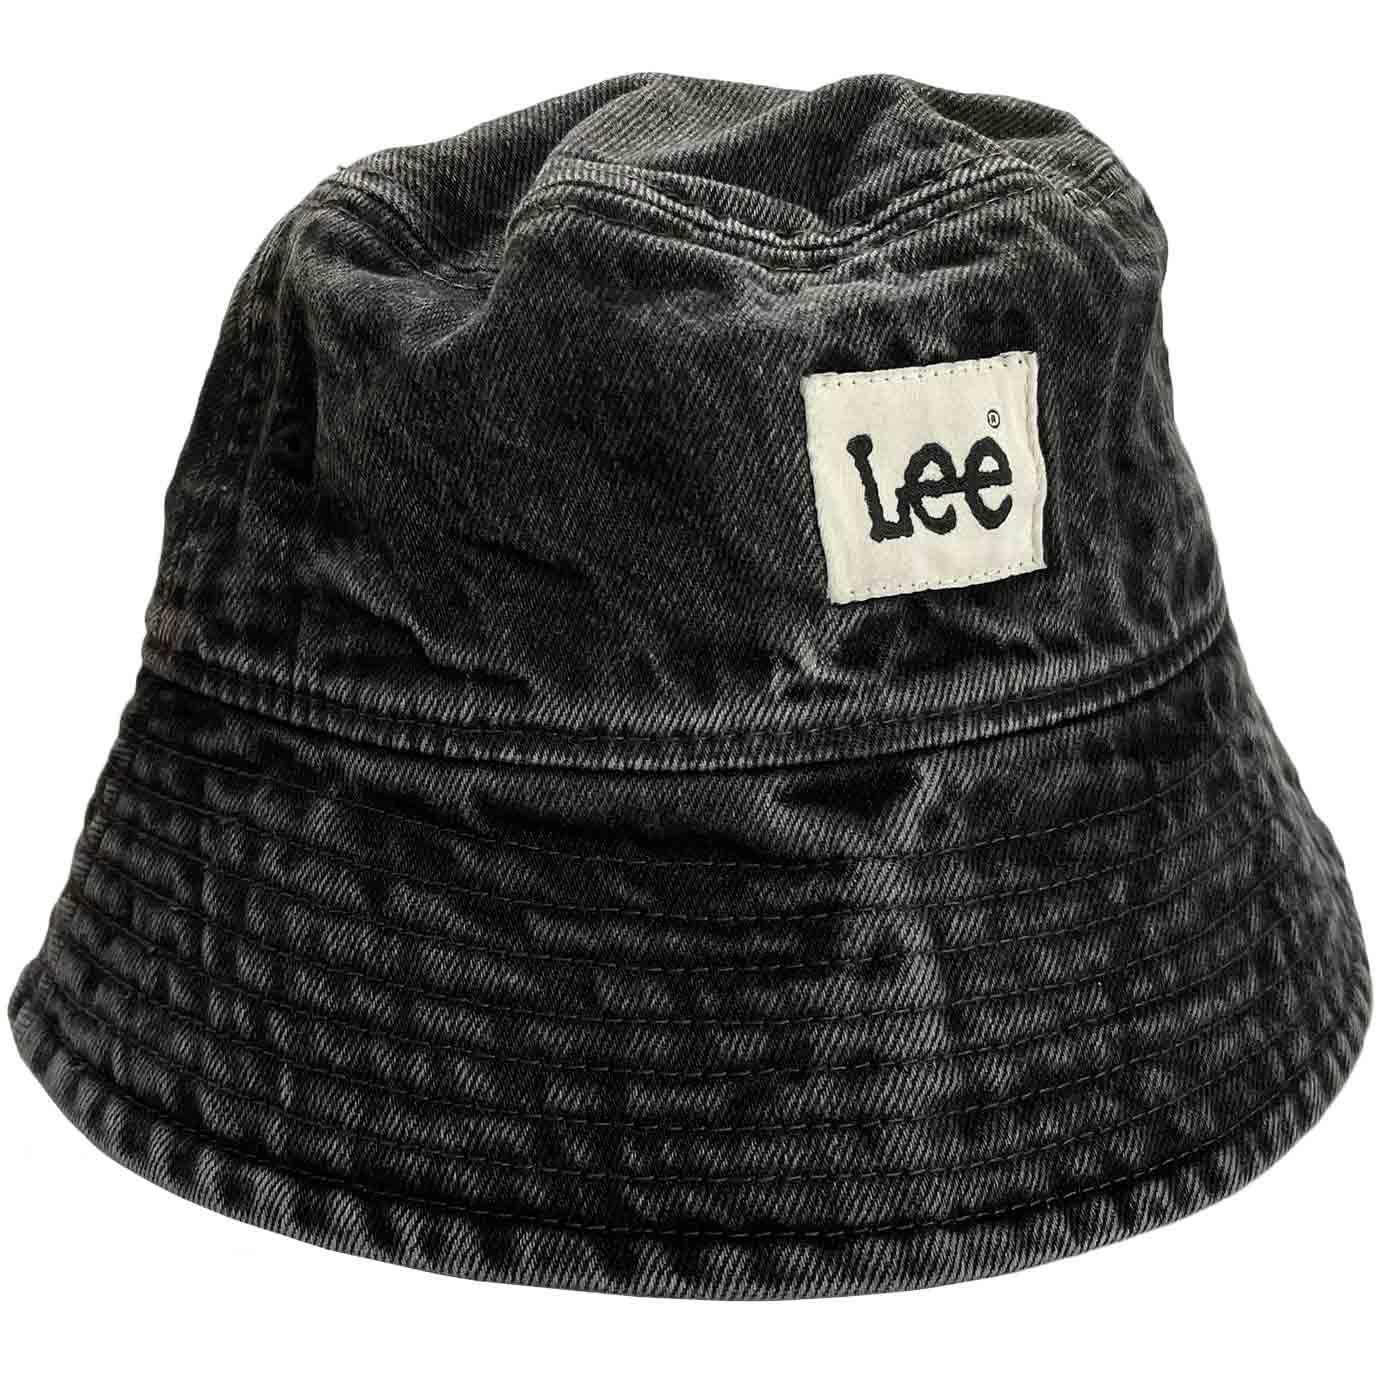 LEE Retro 90s Indie Washed Black Denim Bucket Hat